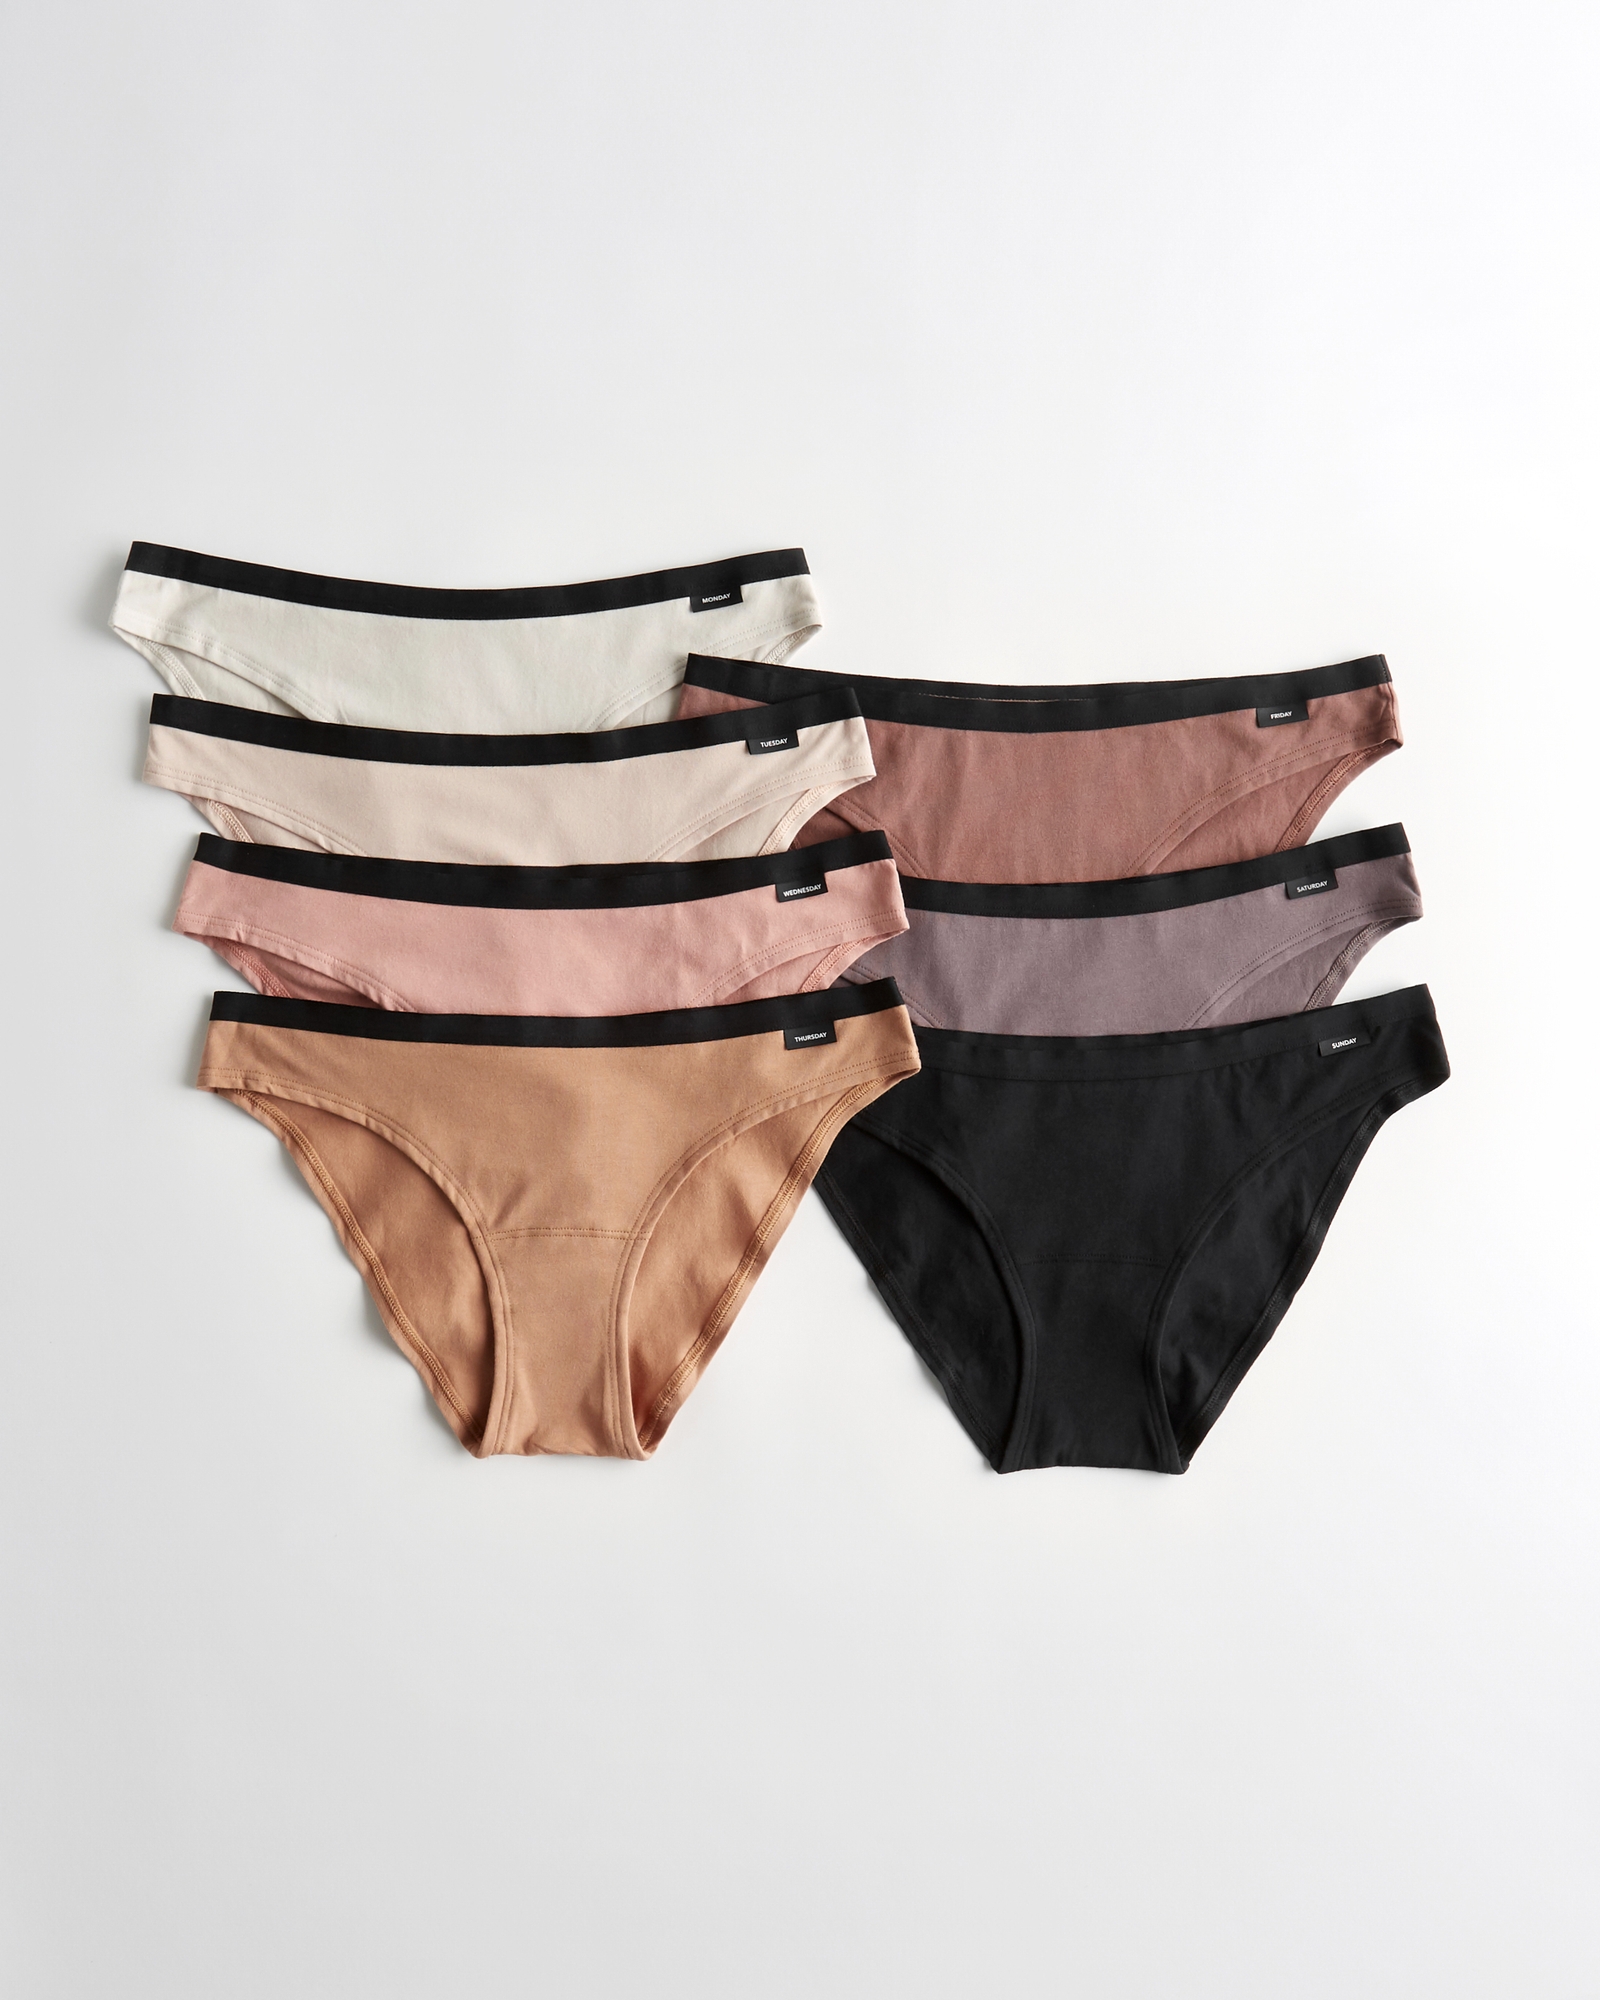 Women's Gilly Hicks Cotton Blend Bikini Underwear 7-Pack